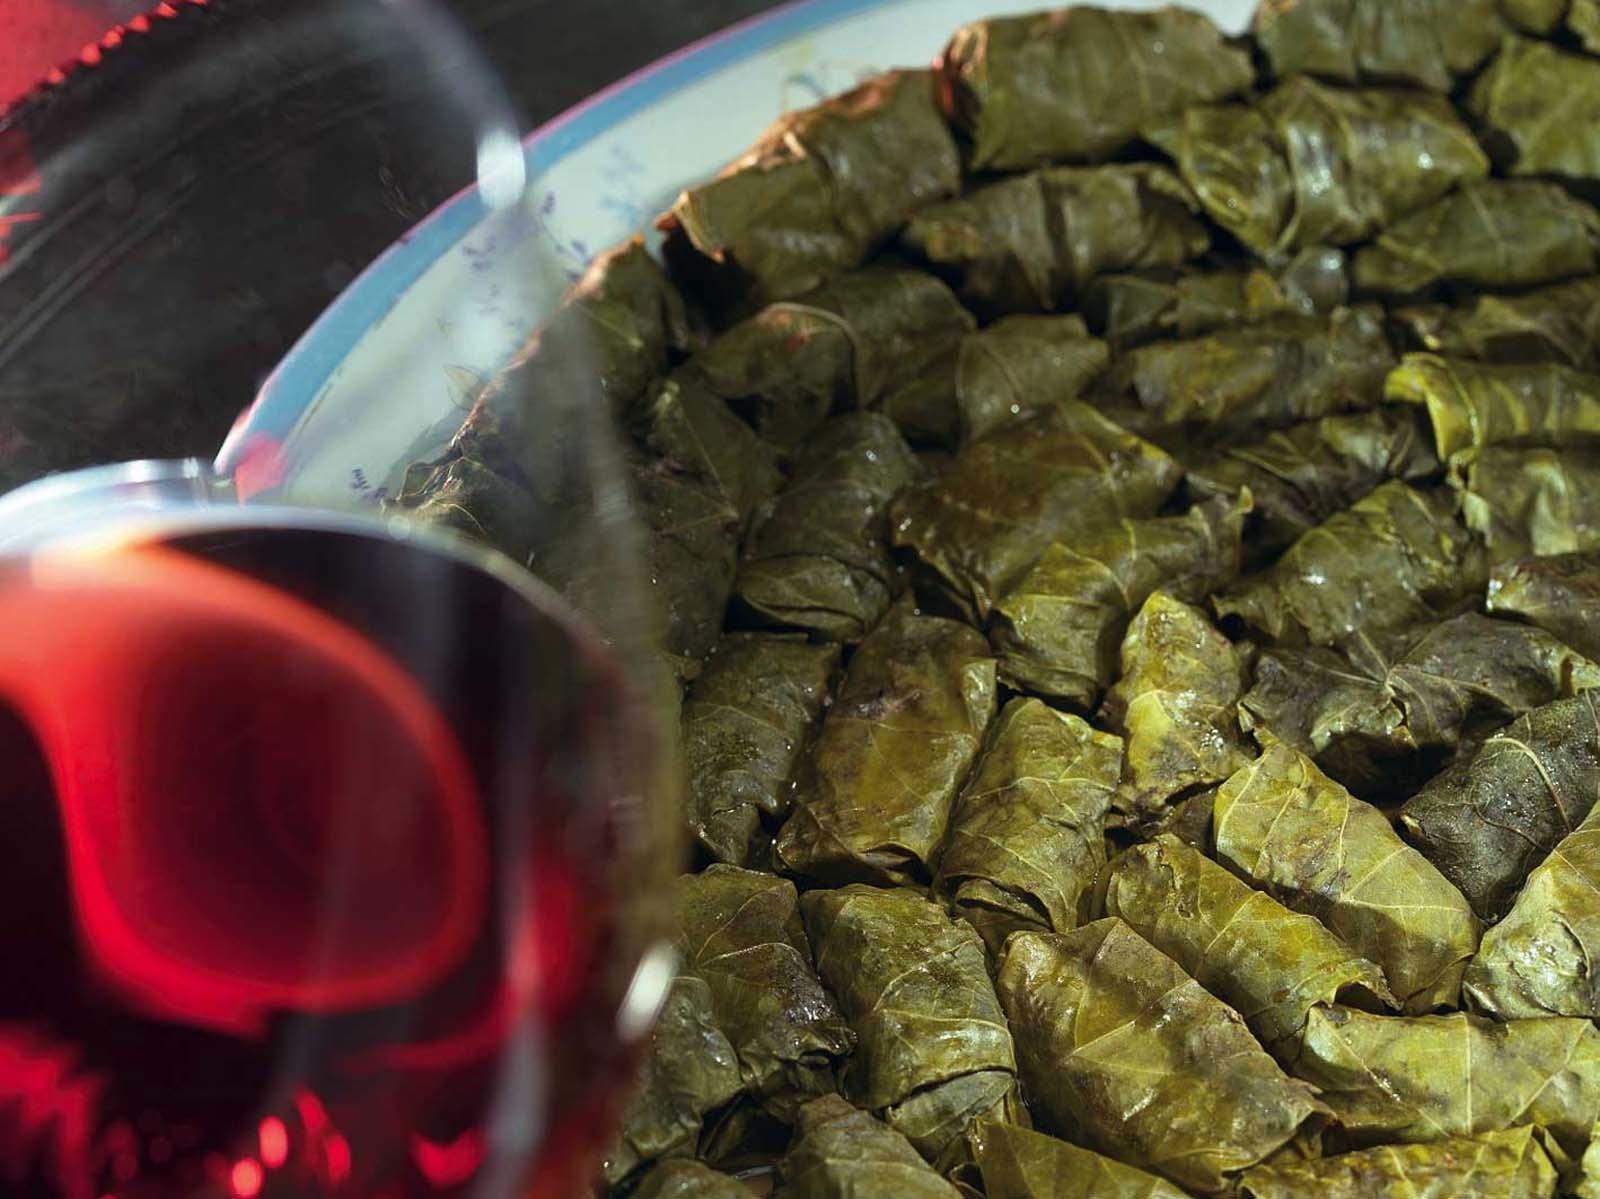 Рецепт долмы из виноградных листьев с фото по шагам в домашних условиях по армянски